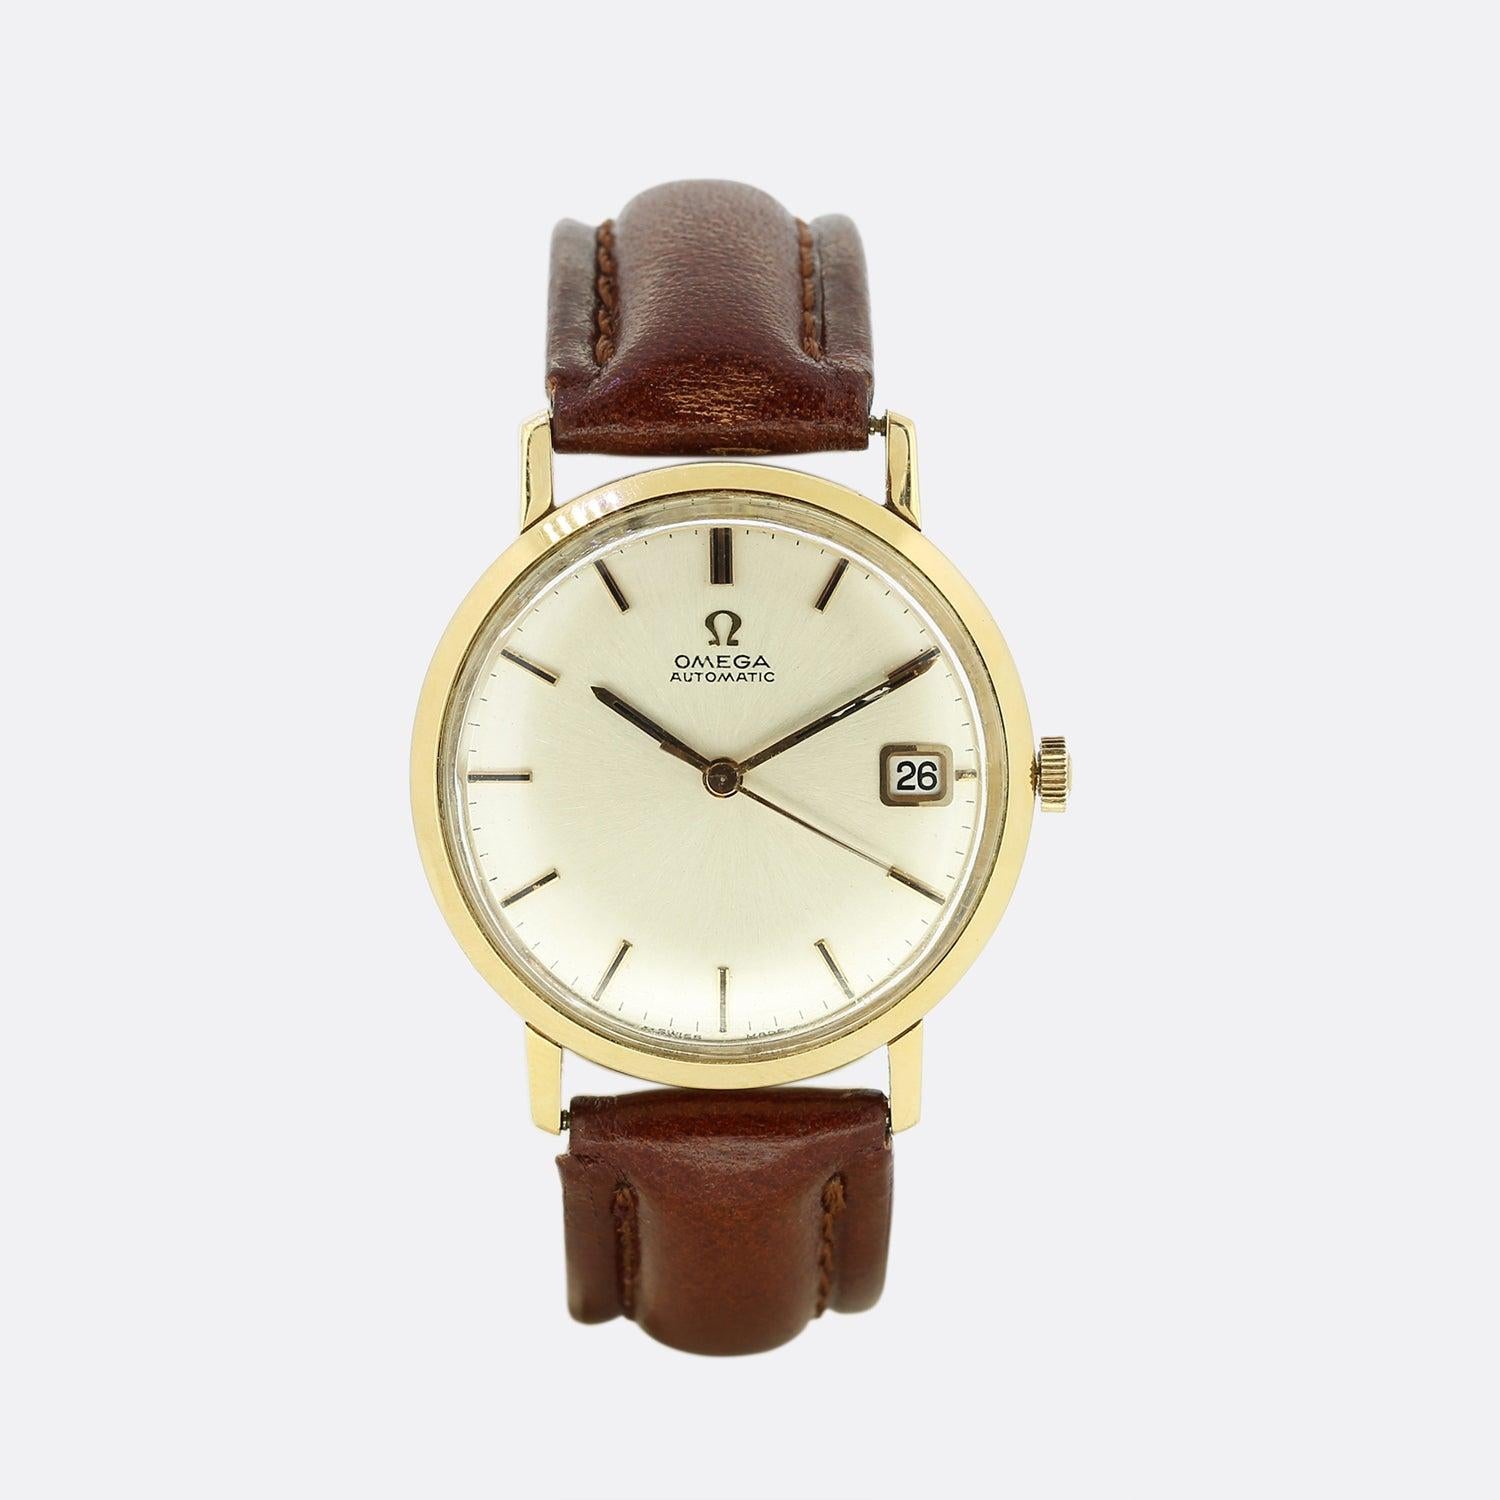 Il s'agit d'une montre-bracelet automatique Omega vintage en or jaune 18ct. La montre présente toutes ses pièces d'origine, y compris le boîtier, le cadran et la couronne. Cependant, la sangle a été remplacée à un moment donné. 

Les montres